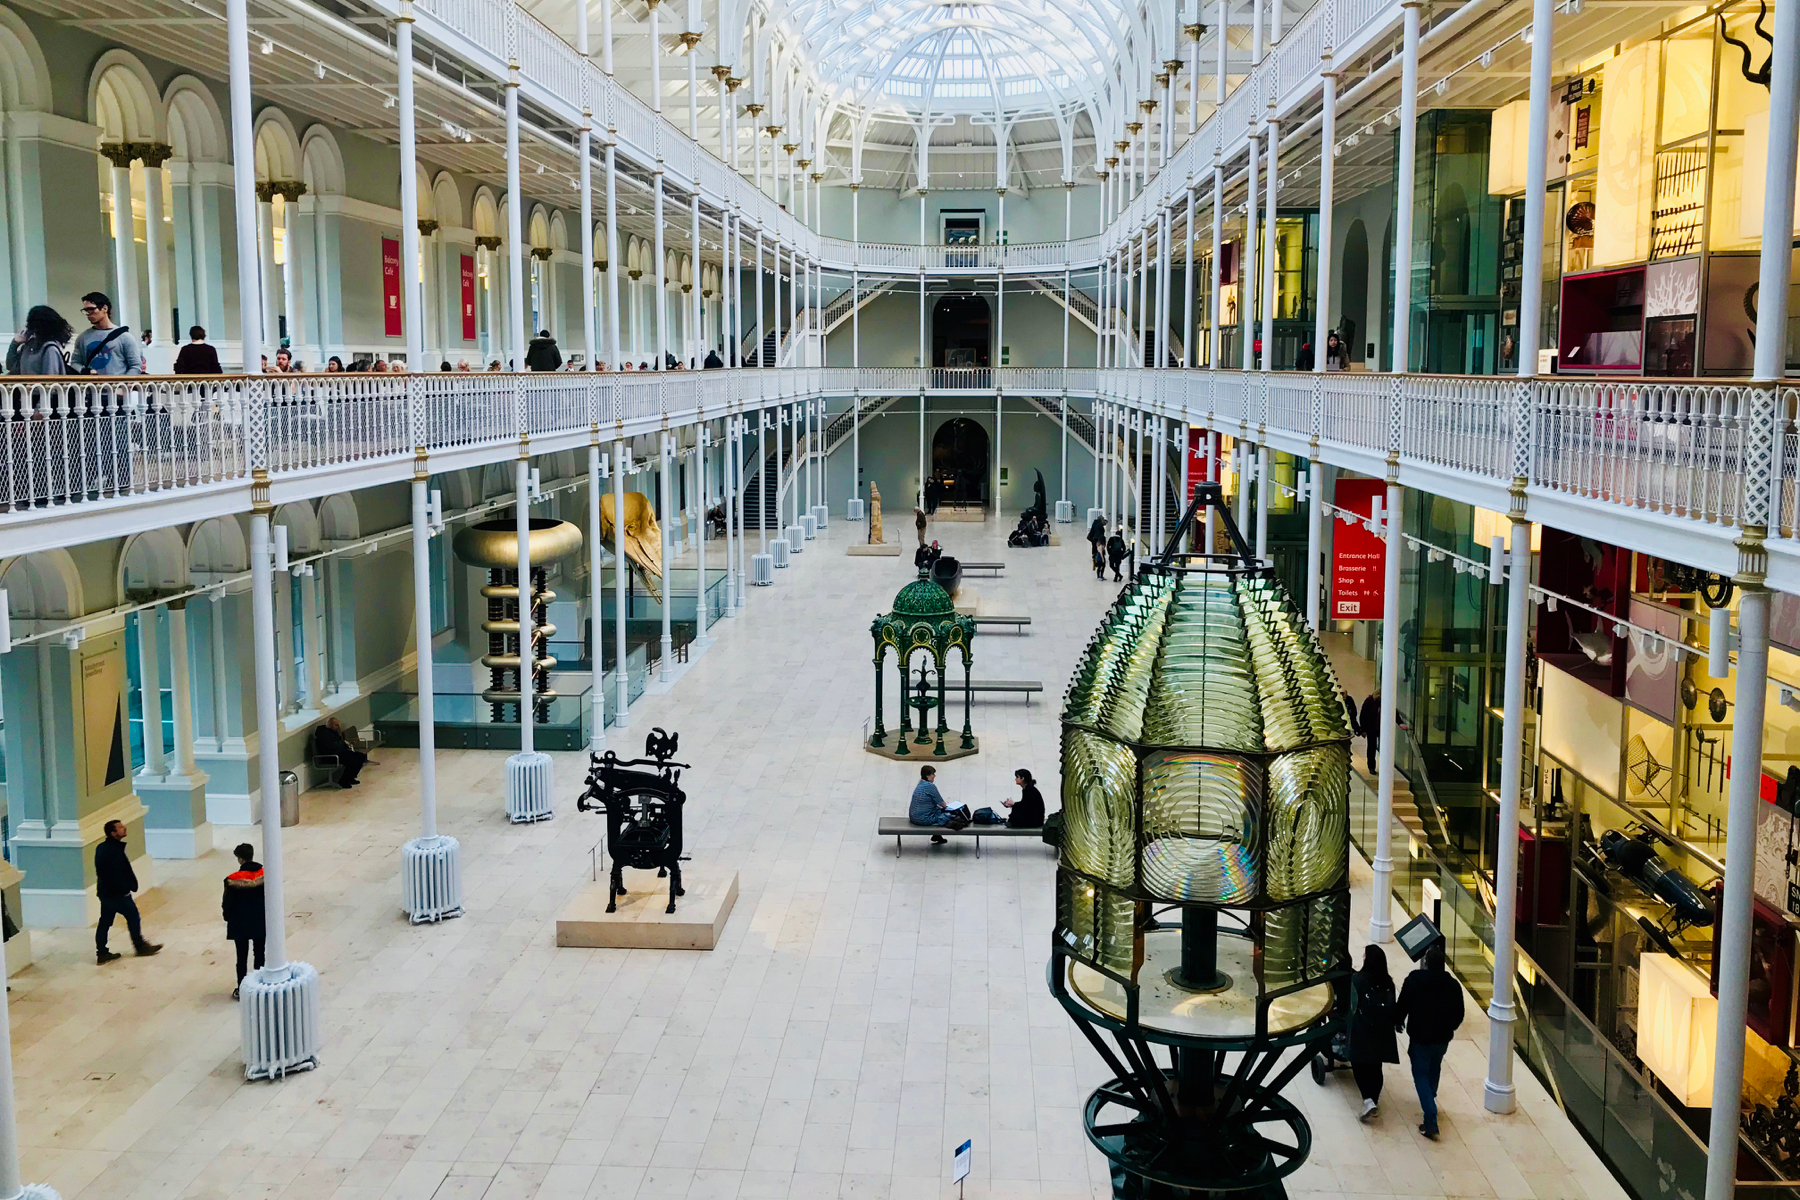 The atrium of the National Museum of Scotland in Edinburgh.